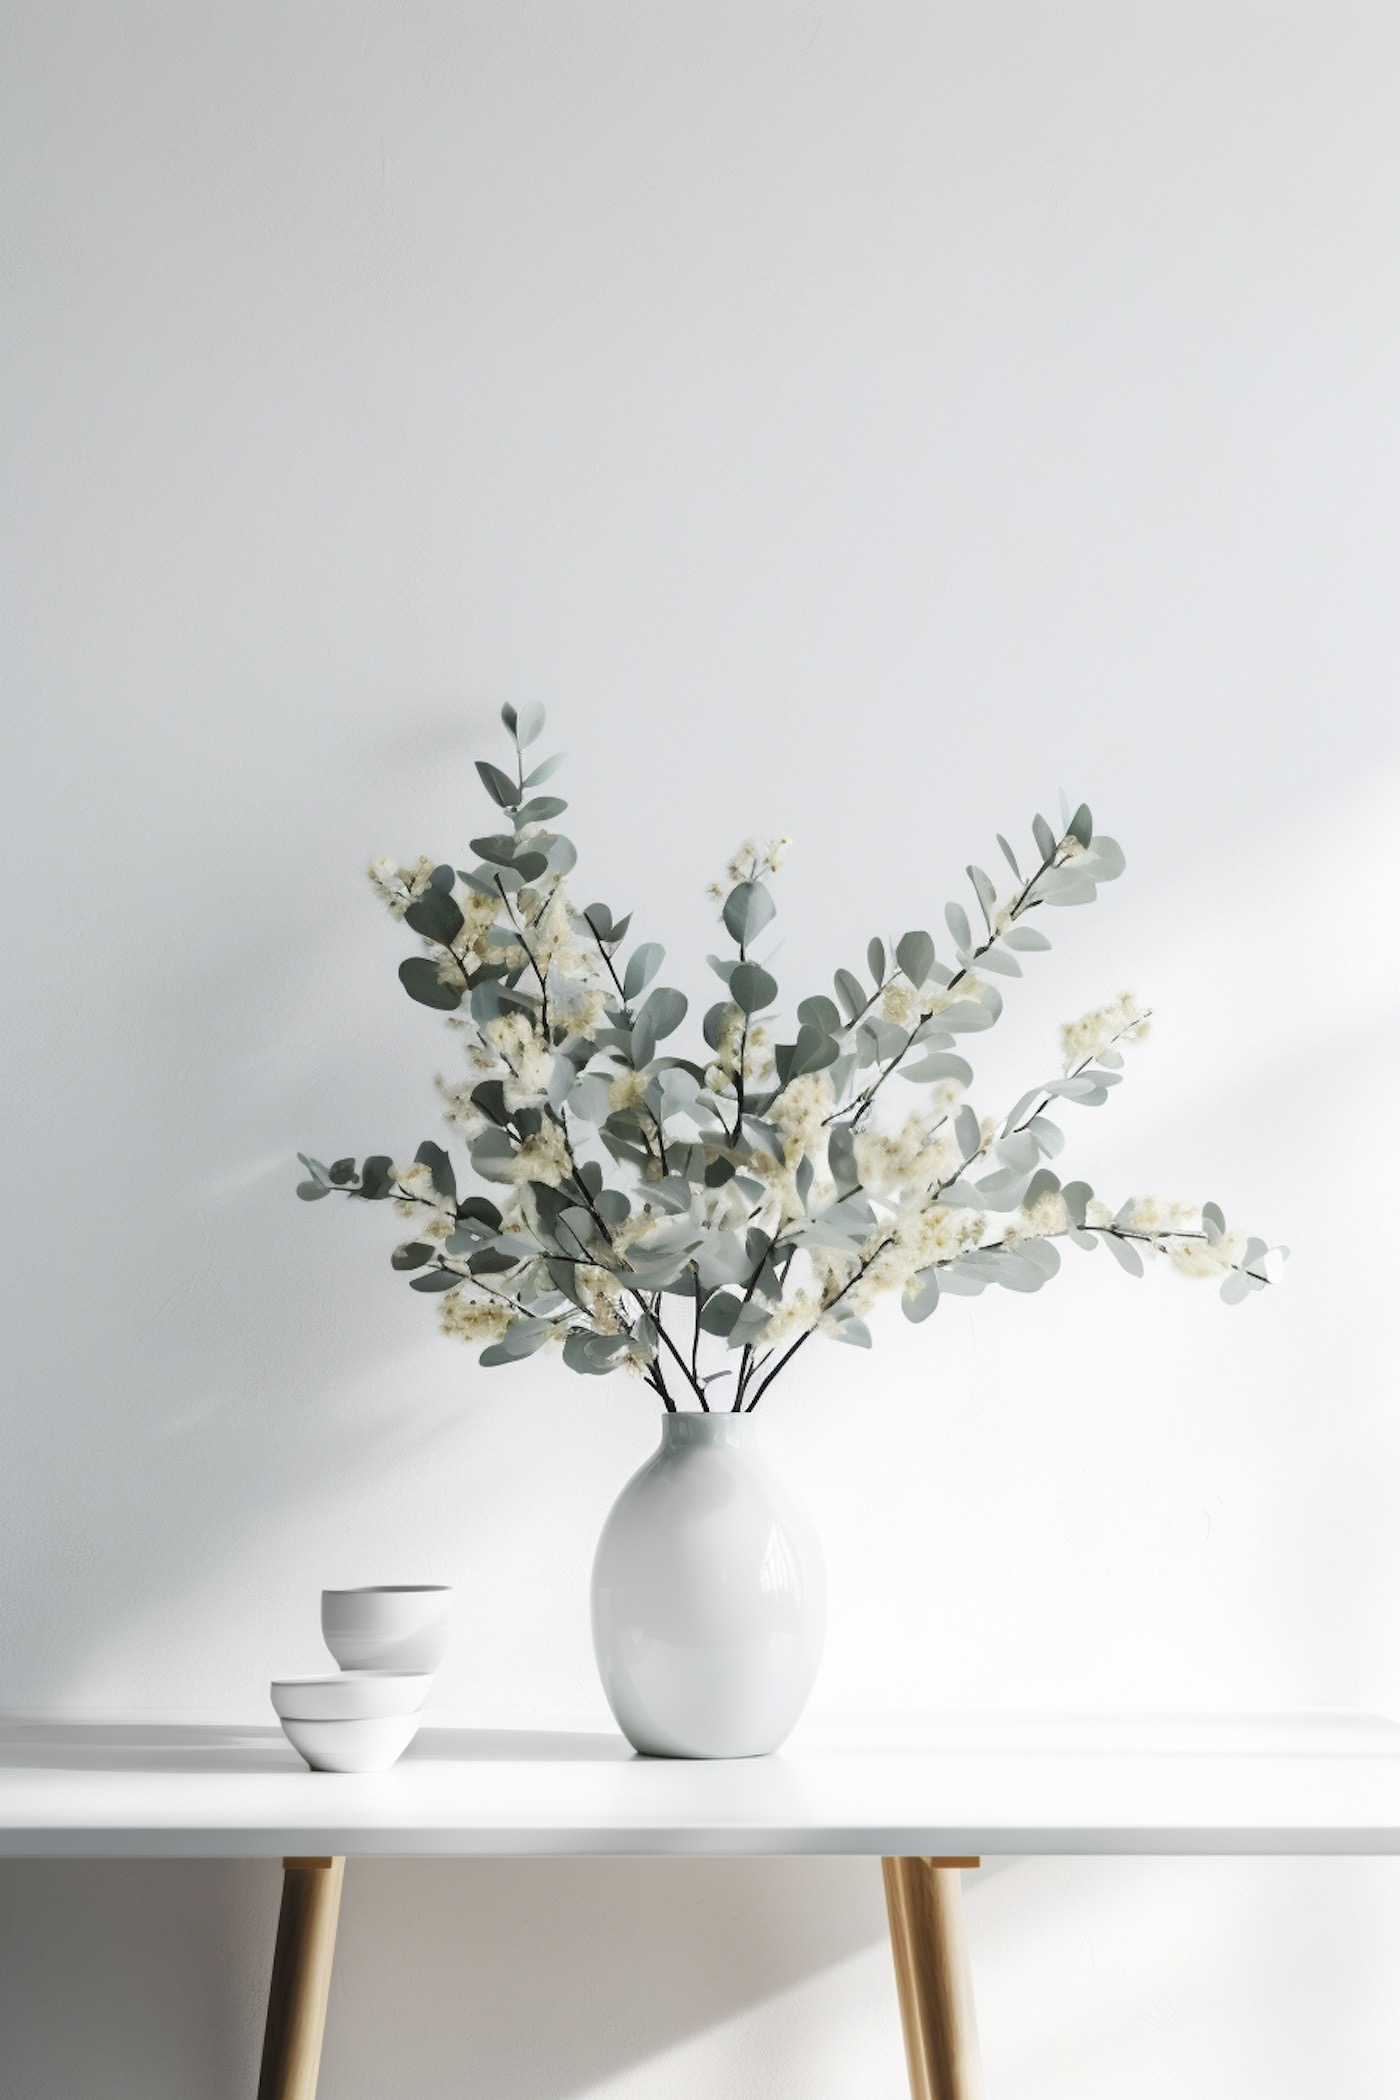 comment stabiliser bouquet eucalyptus scandinave minimaliste